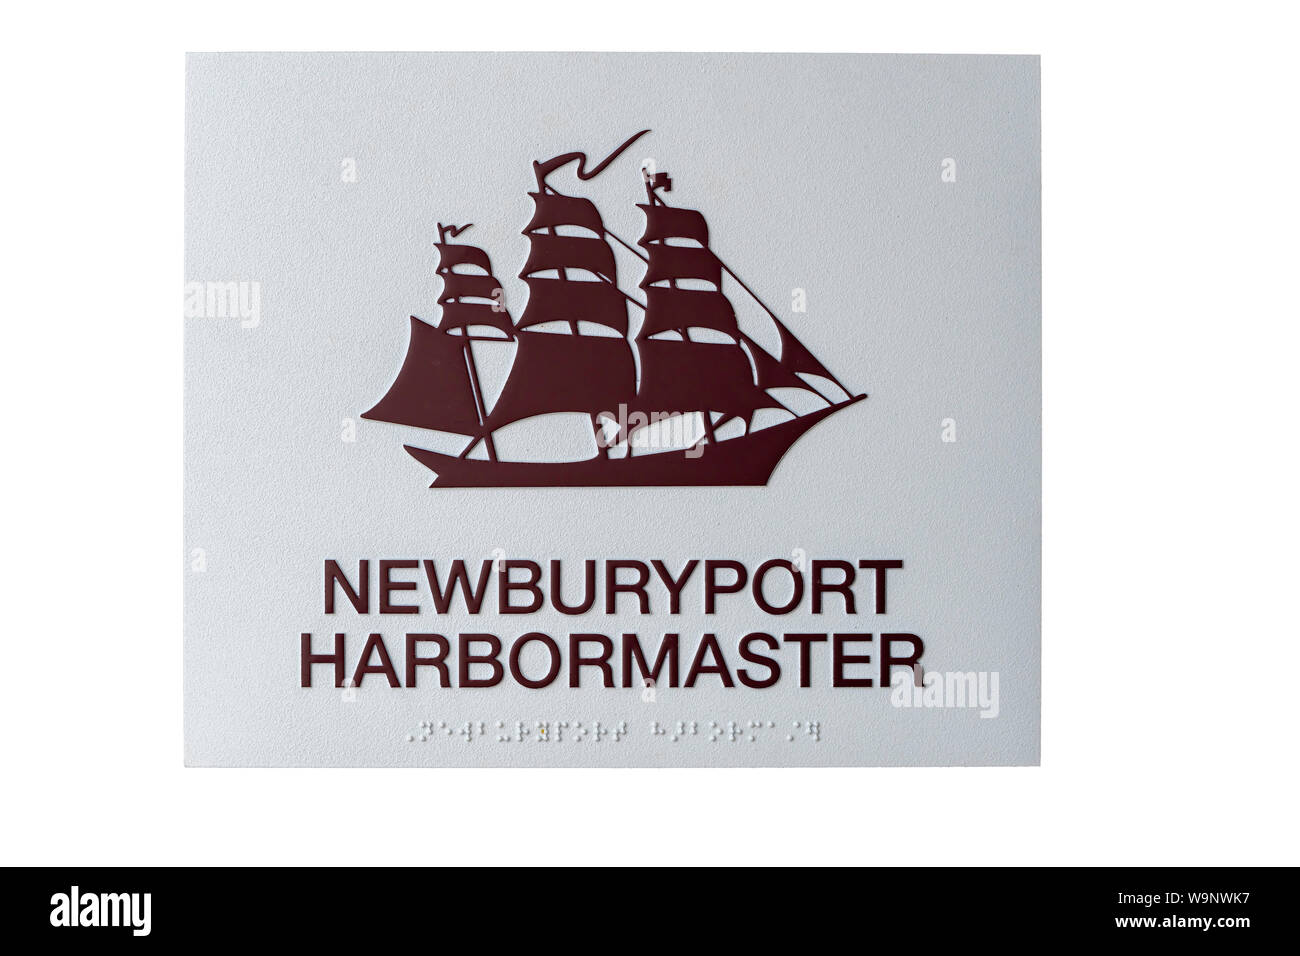 Newburyport Massachusetts, USA. 8/01/2019. Newburyport harbormaster sign isolated on white Stock Photo